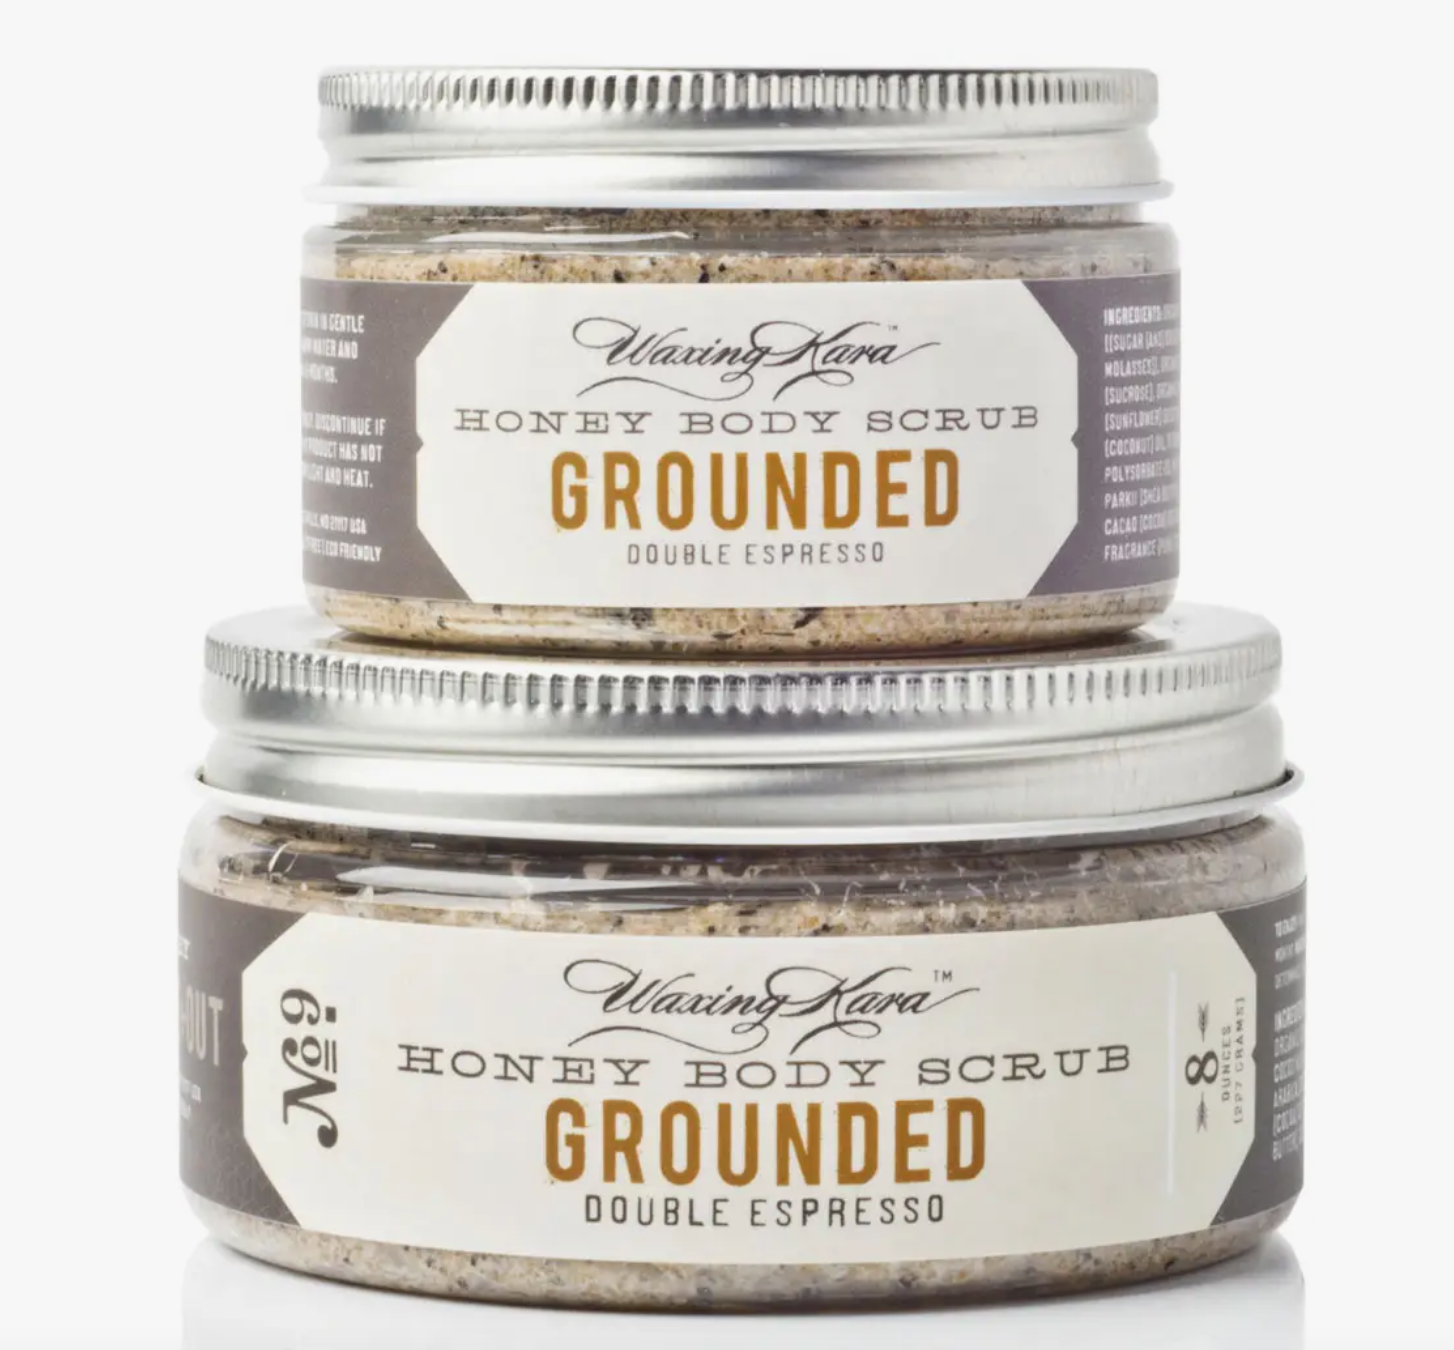 Grounded Coffee Body Scrub